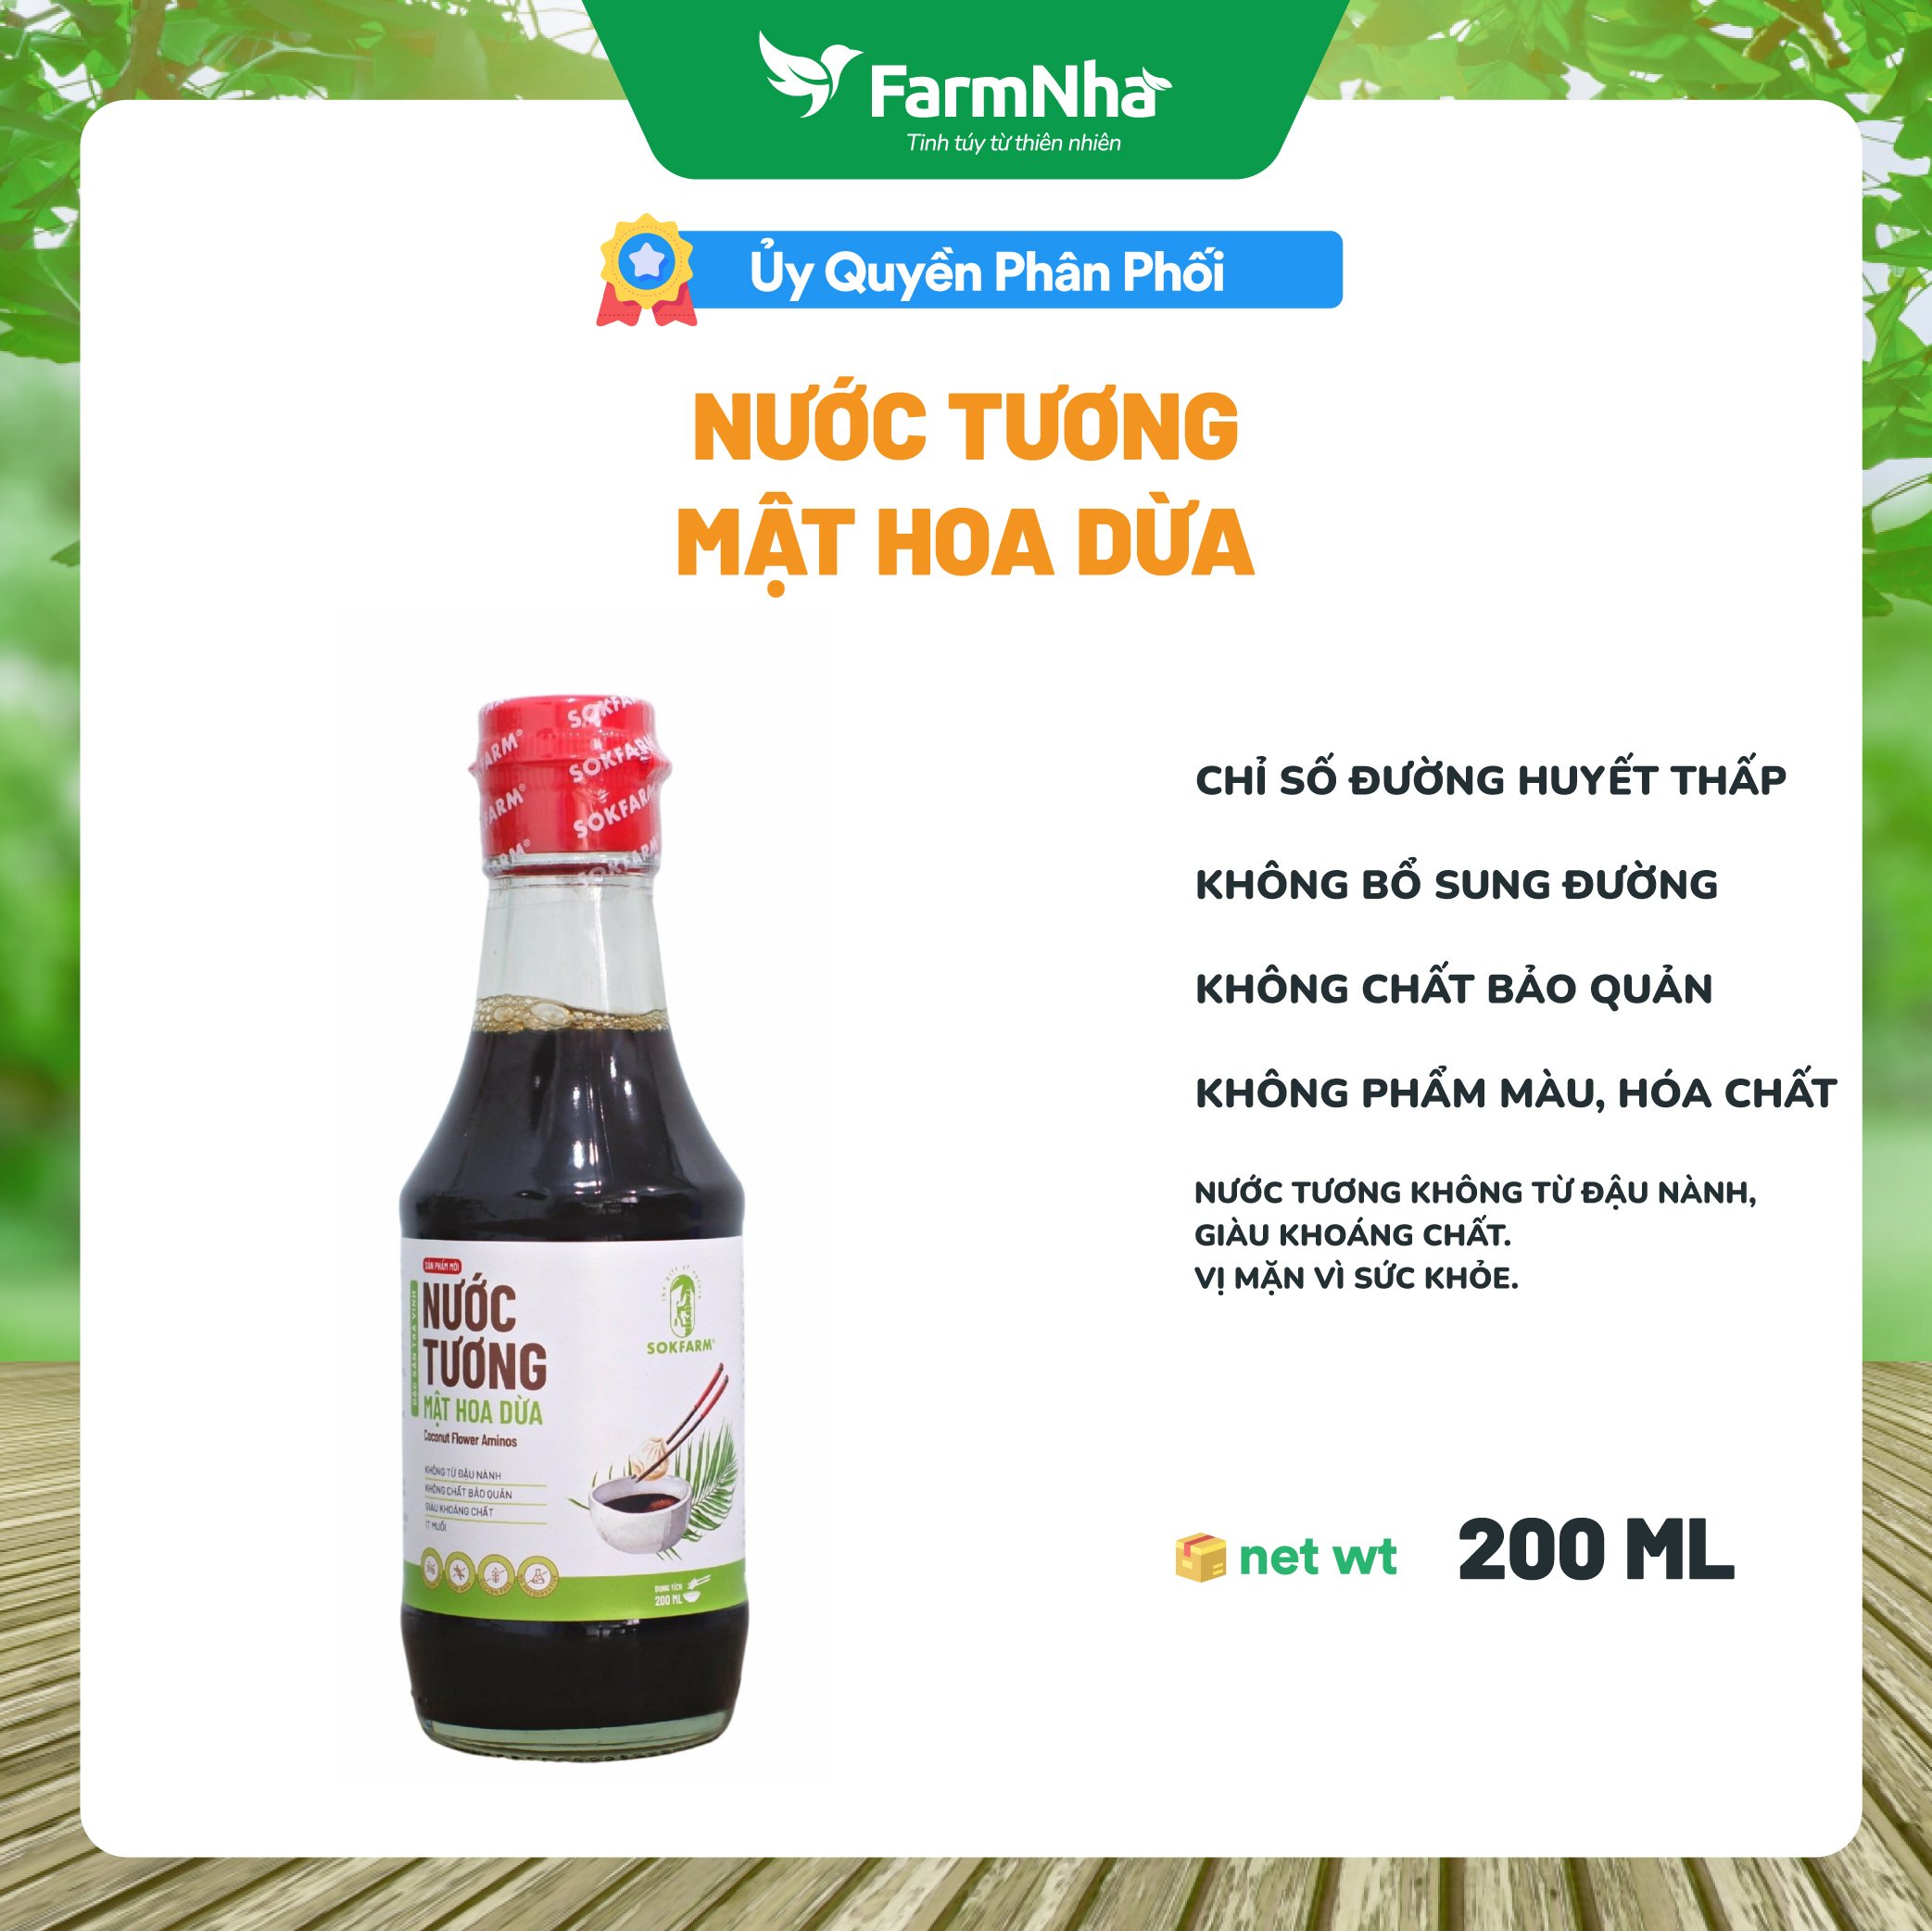 Nước Tương Mật Hoa Dừa Sokfarm - Lên men từ mật hoa dừa và không từ Đậu Nành, hàm lượng muối thấp bảo vệ sức khỏe